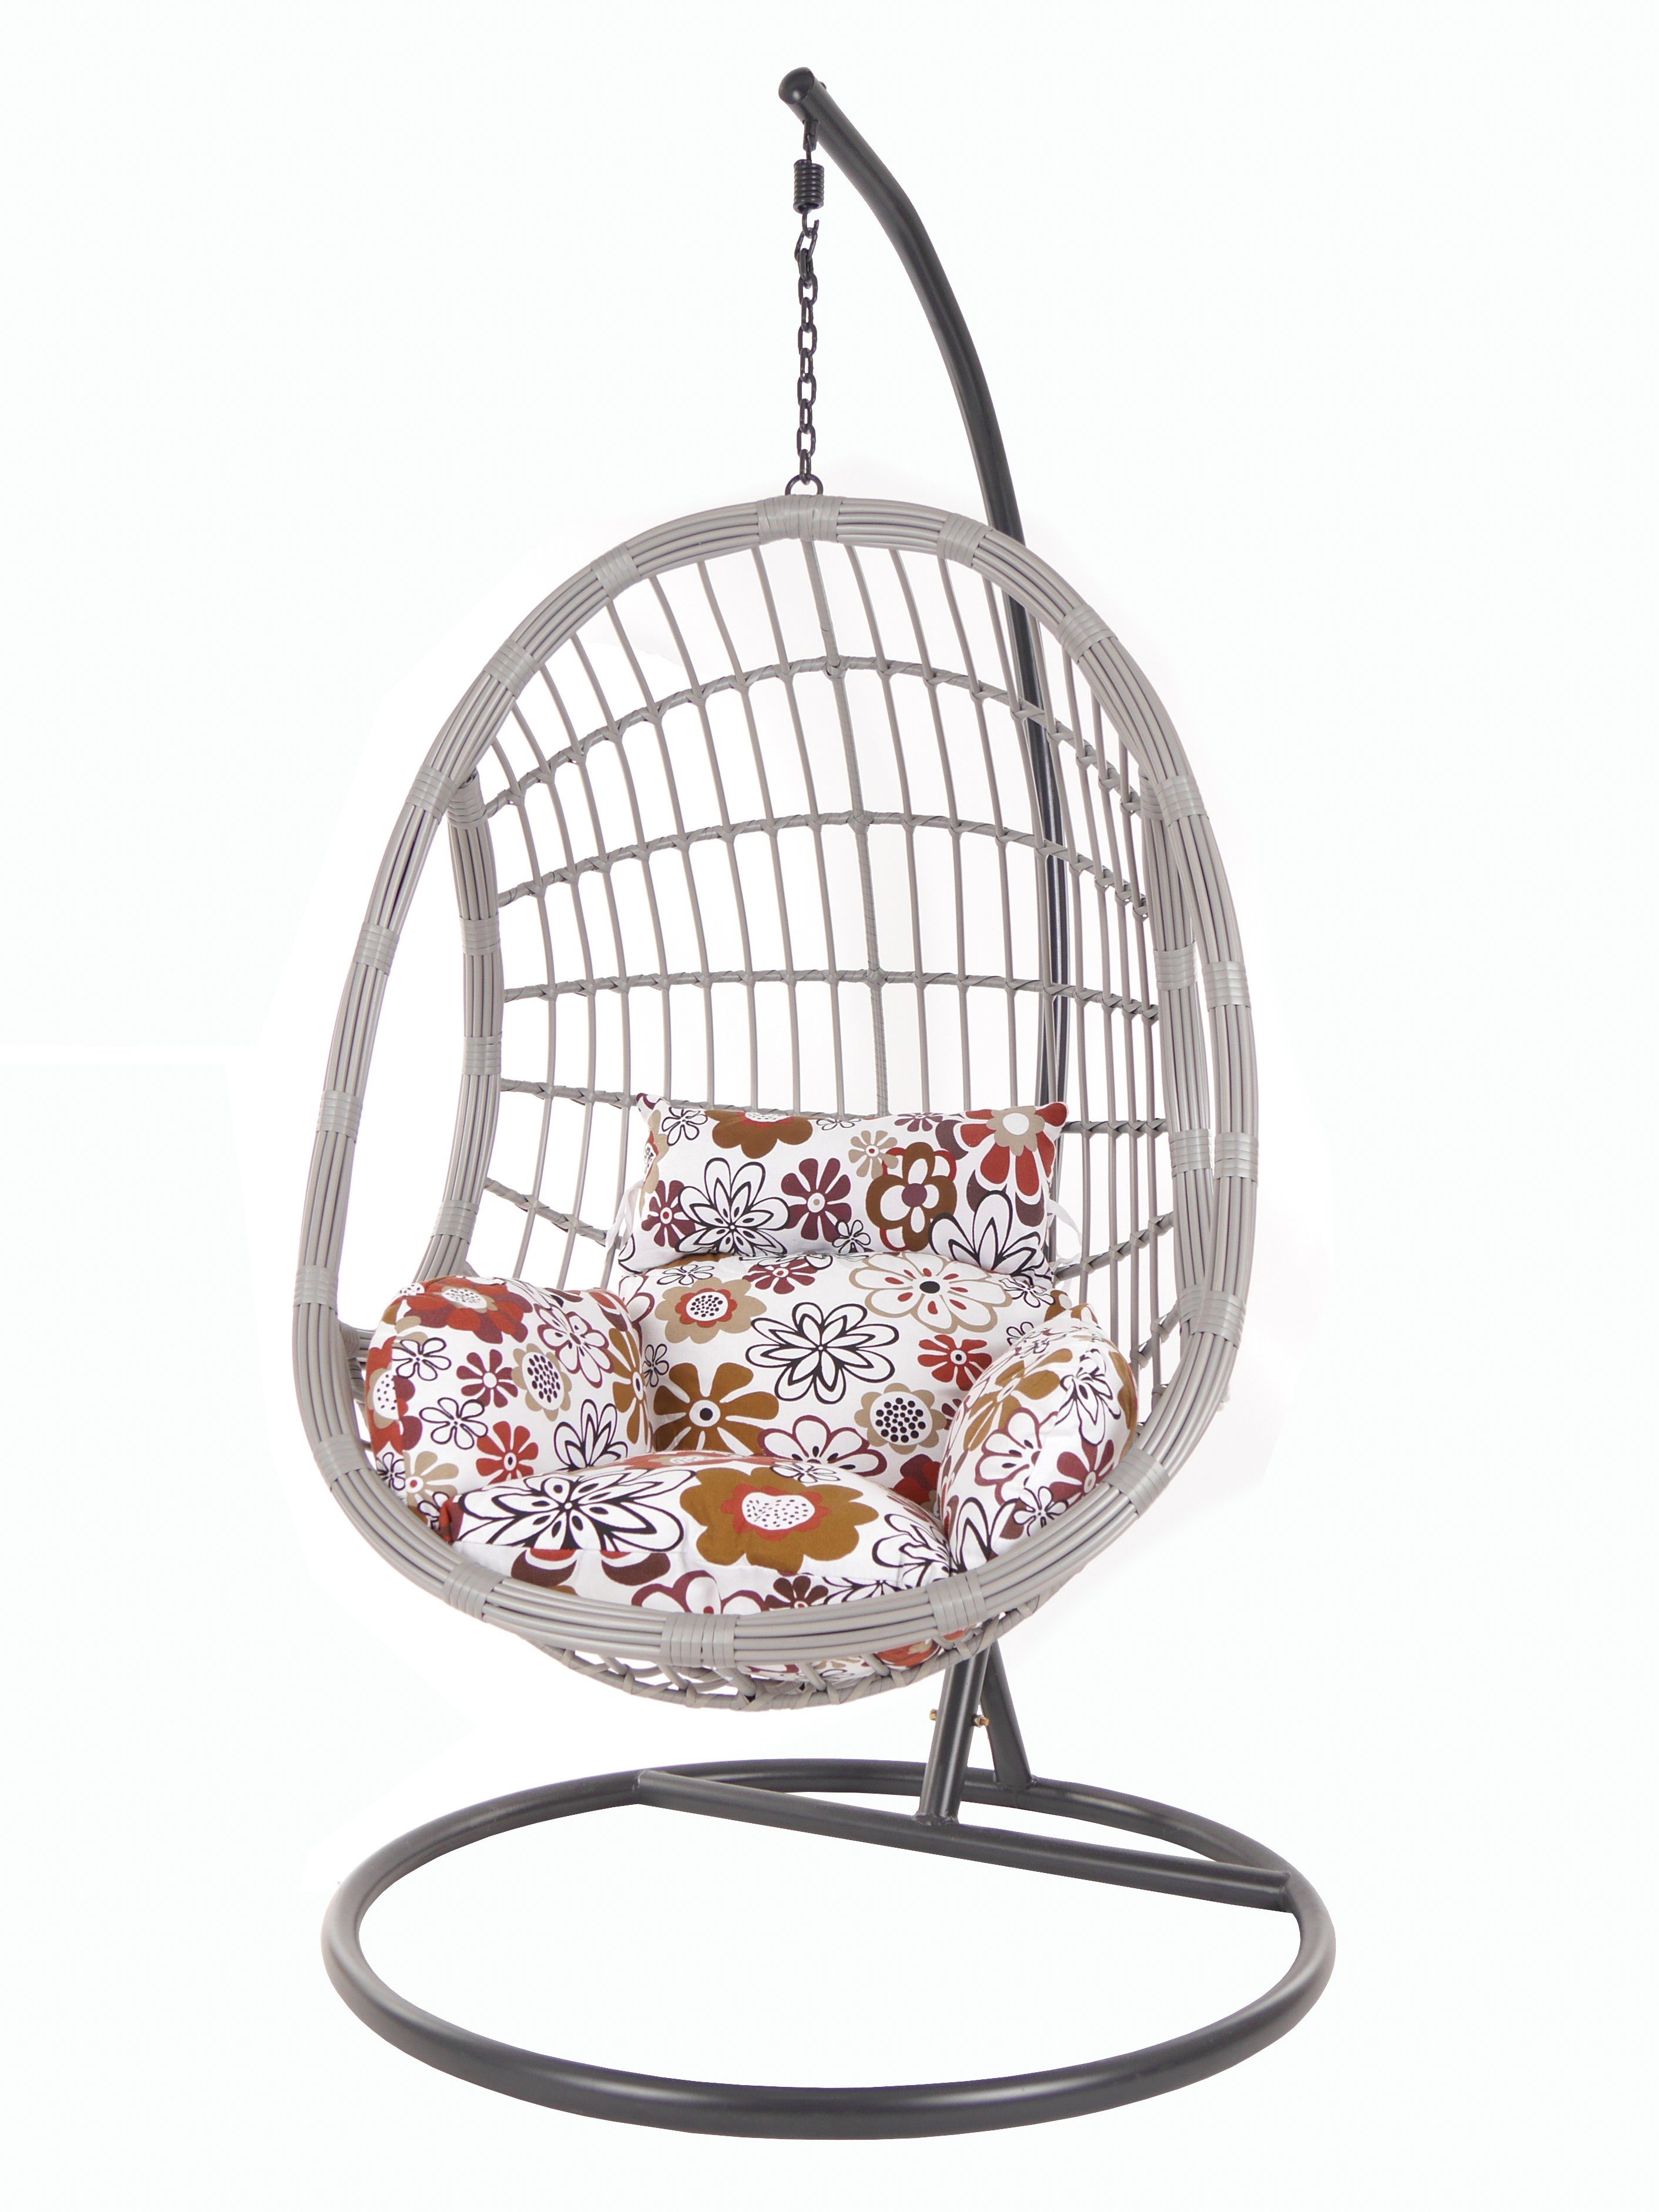 KIDEO Hängesessel PALMANOVA lightgrey, Kissen Swing flowers) Loungemöbel, retro (3762 blumenmuster mit Gestell Hängesessel und retro Chair